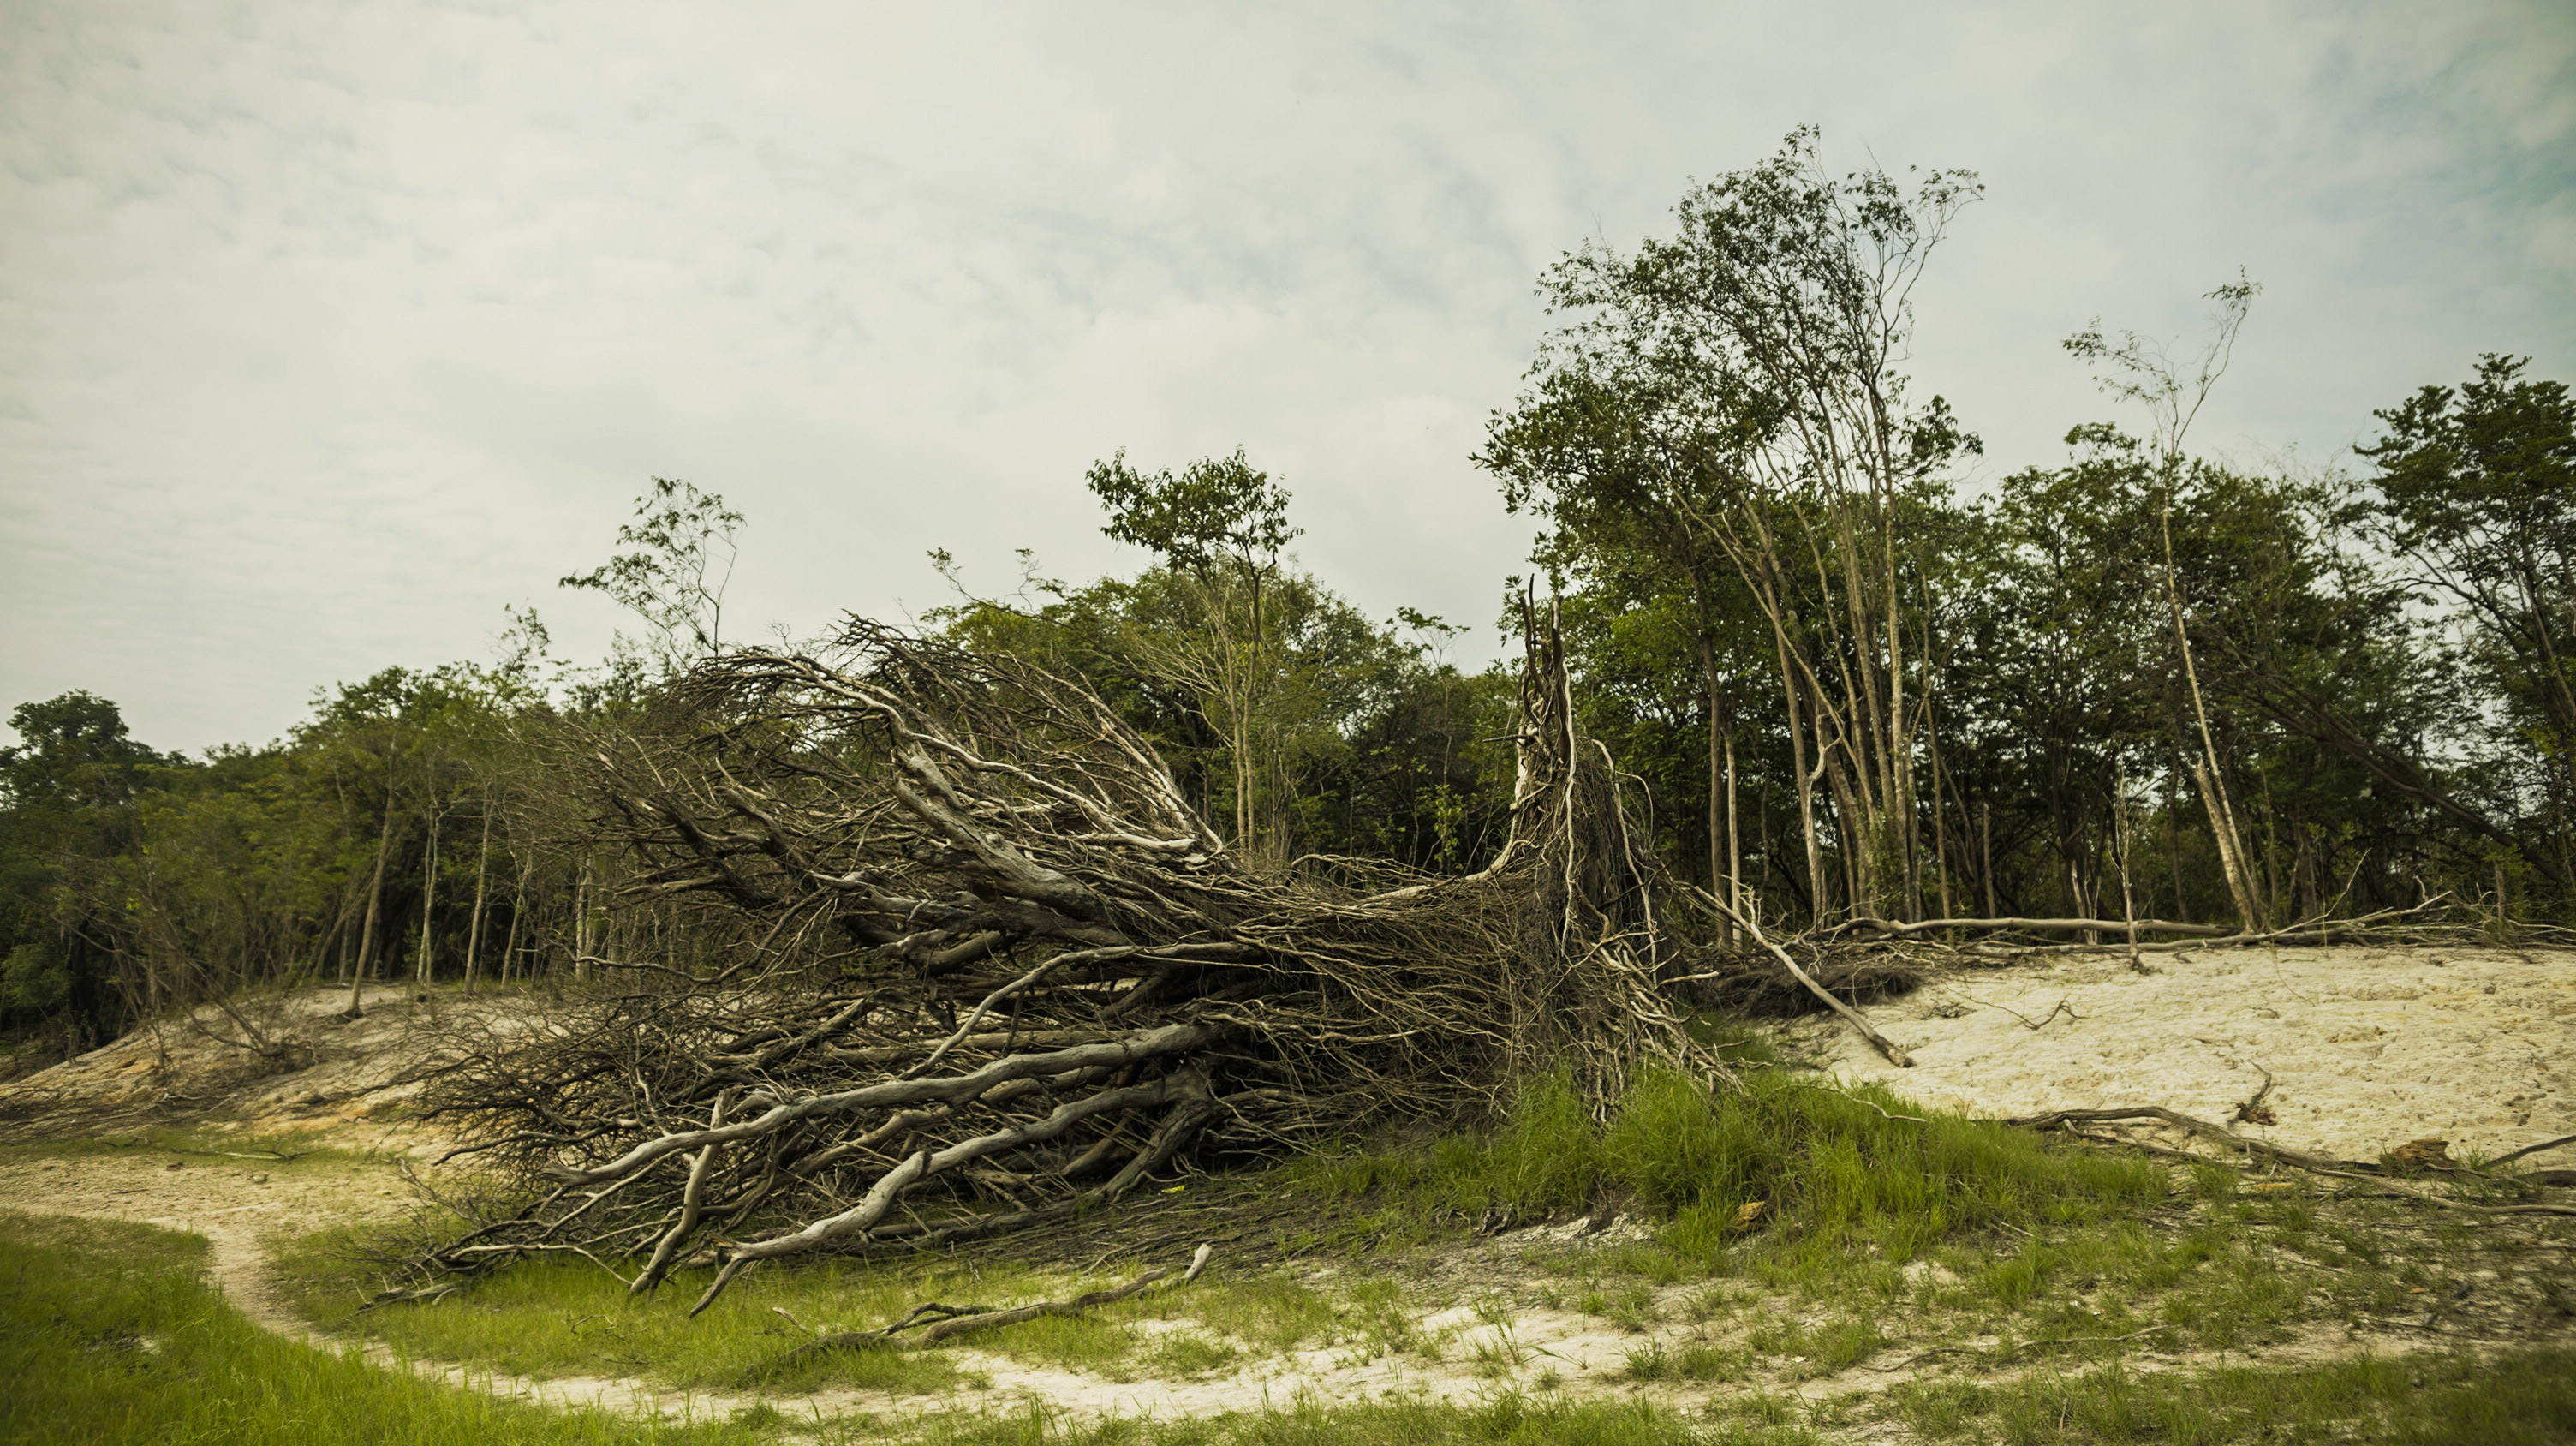 Árvores caídas ao longo da paisagem árida que se tornou o rio Tarumã Açu|Flávia Abtipol/ISA